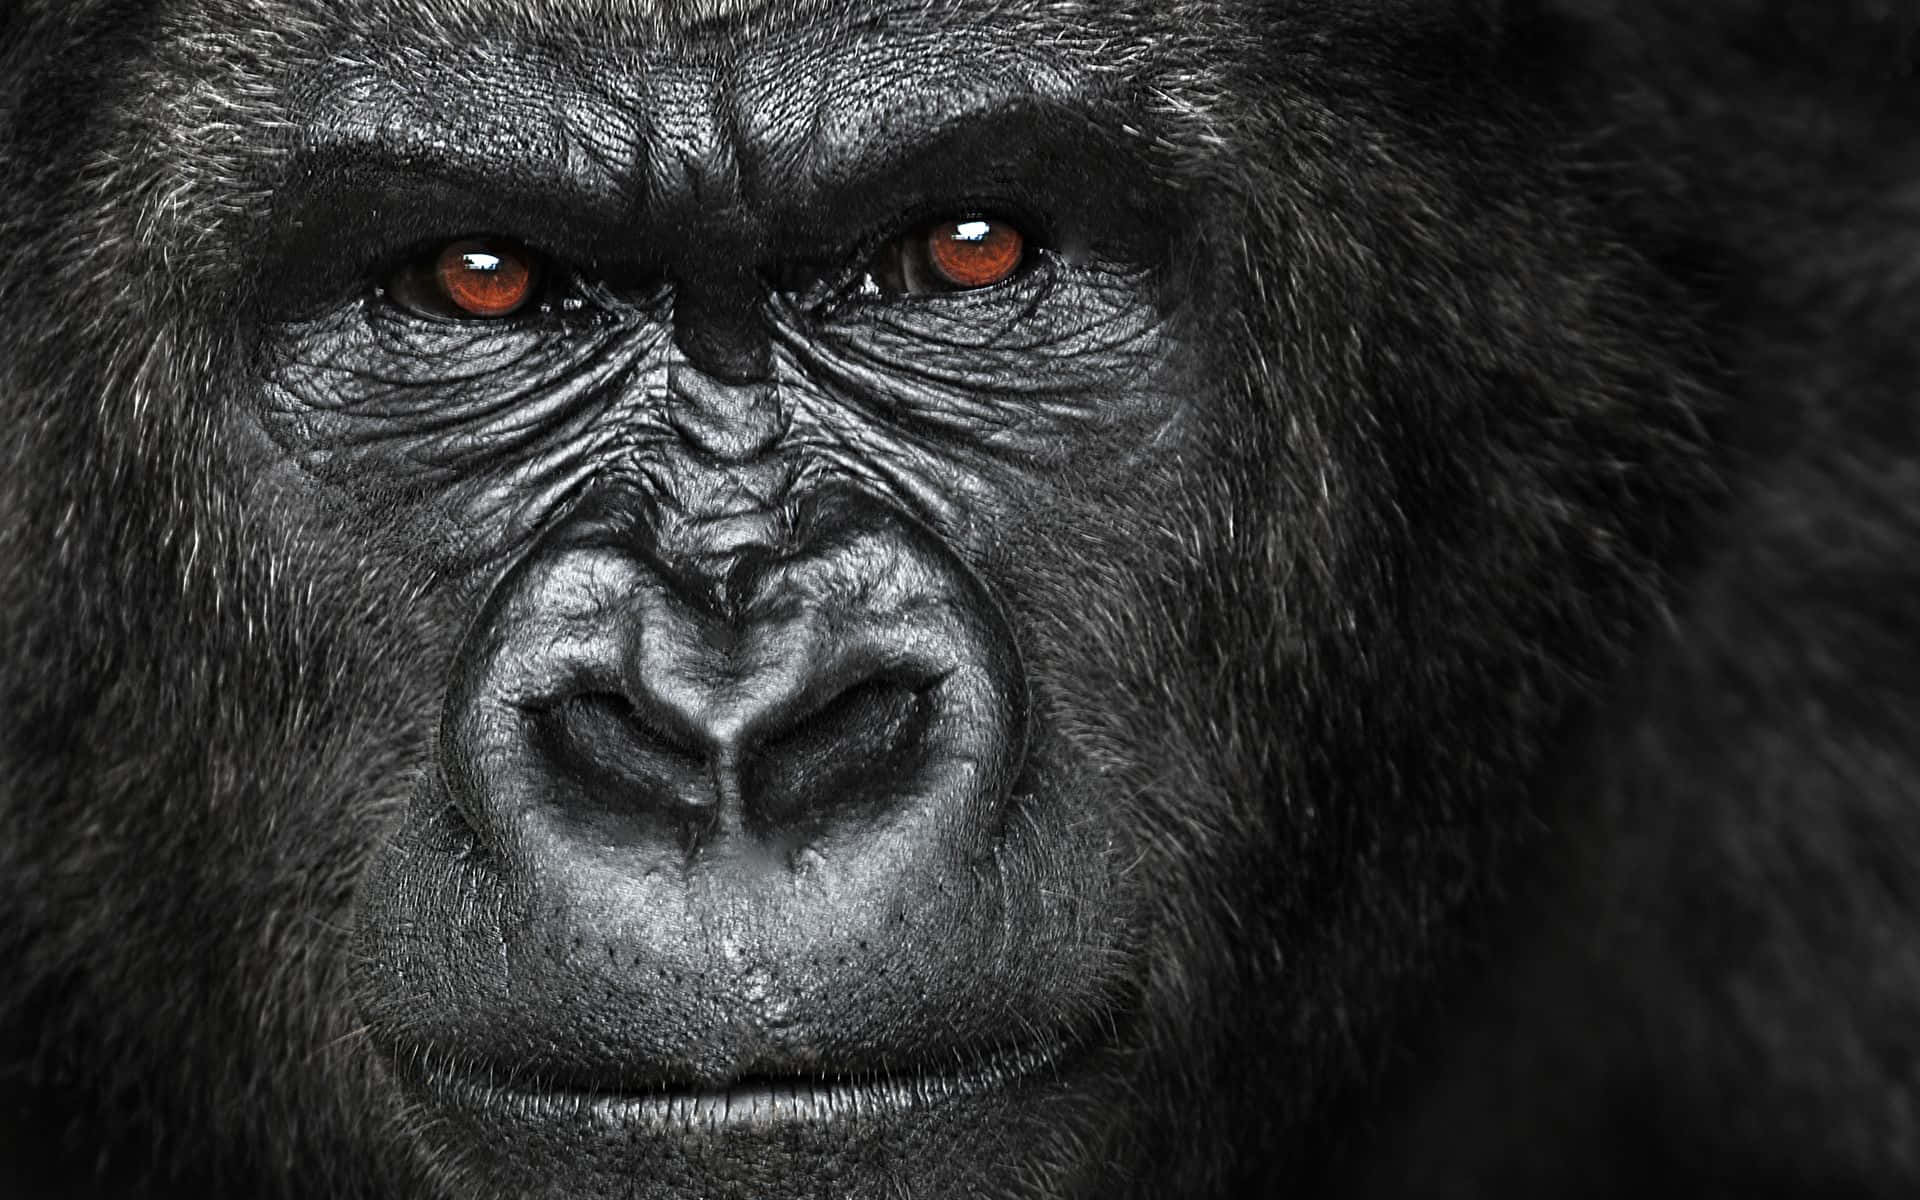 Ilmiglior Sfondo Con La Faccia Di Gorilla